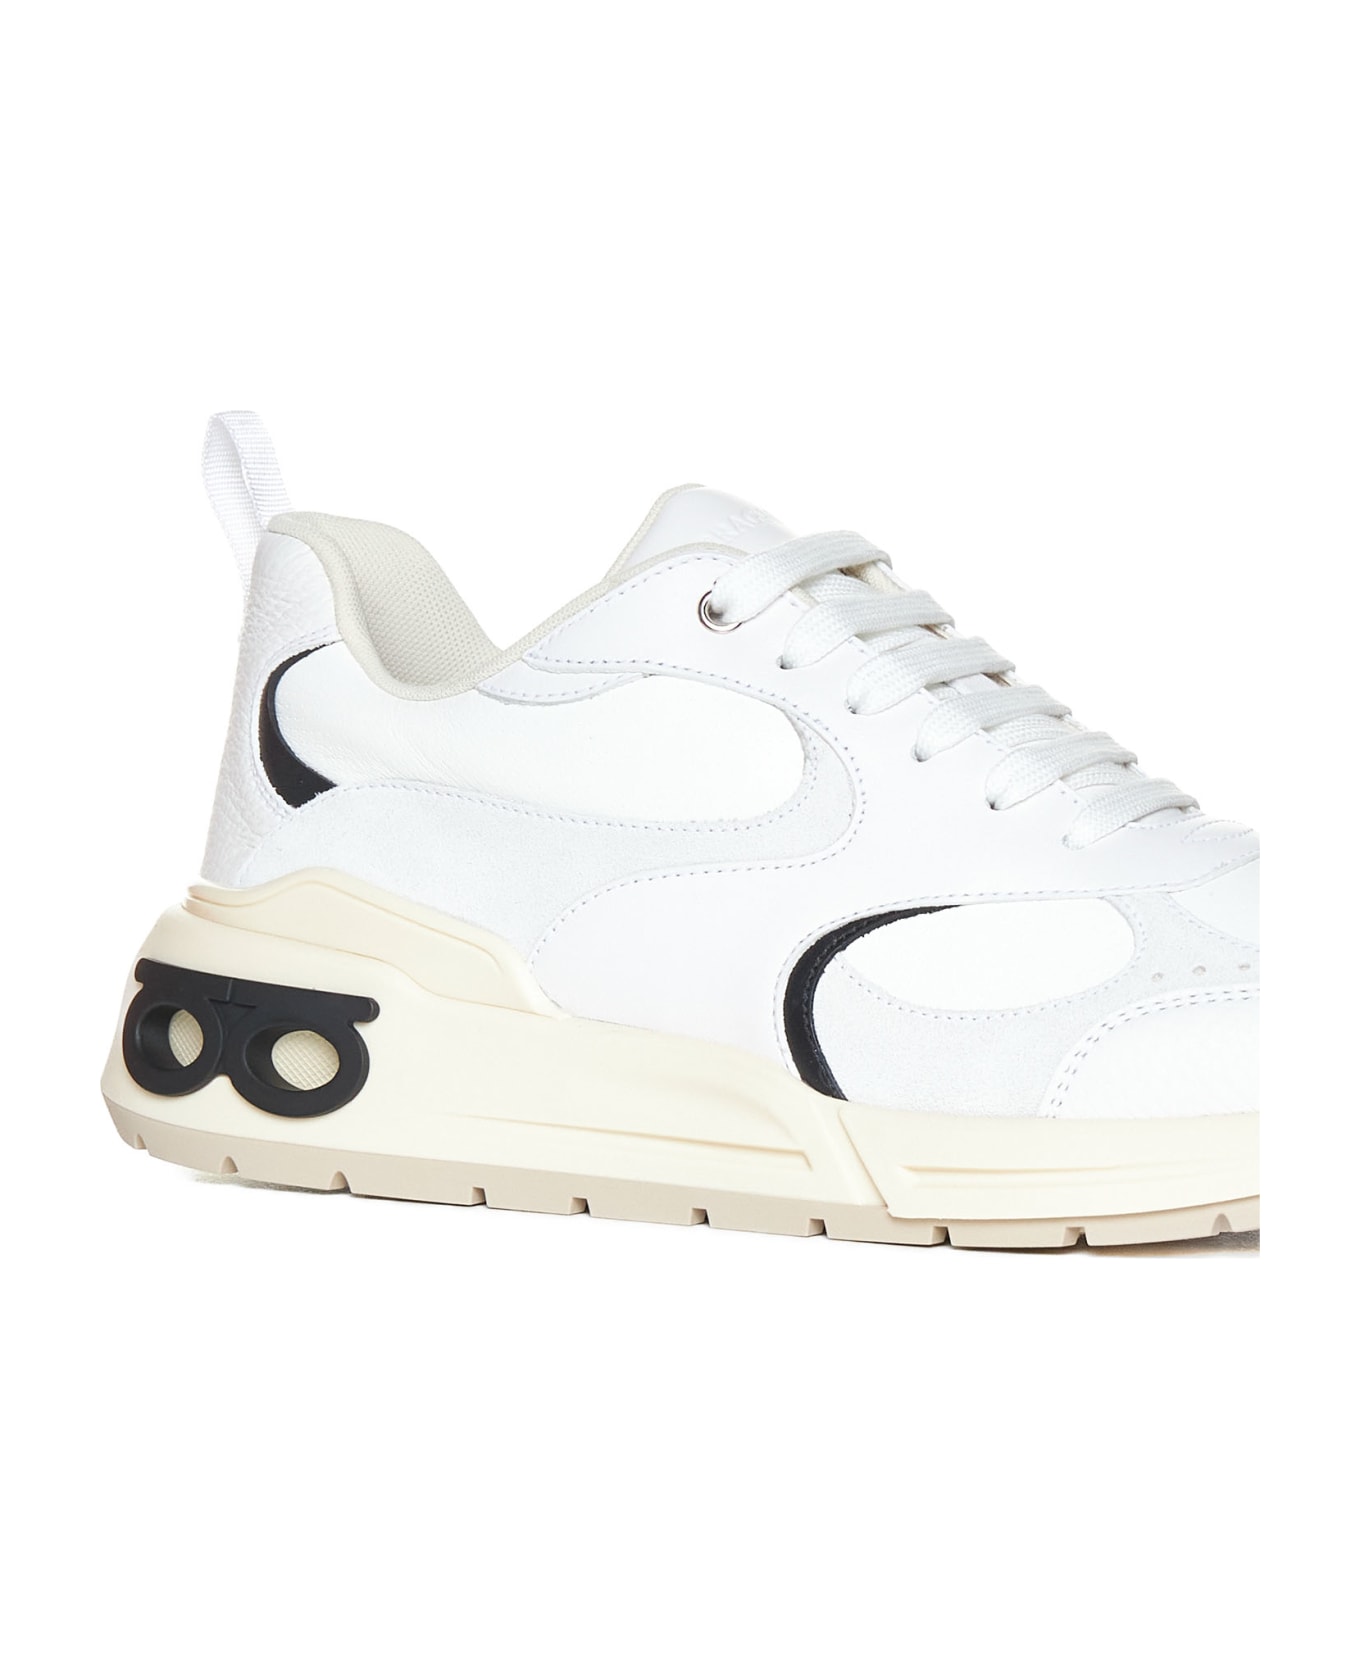 Ferragamo Sneakers - Bianco ottico